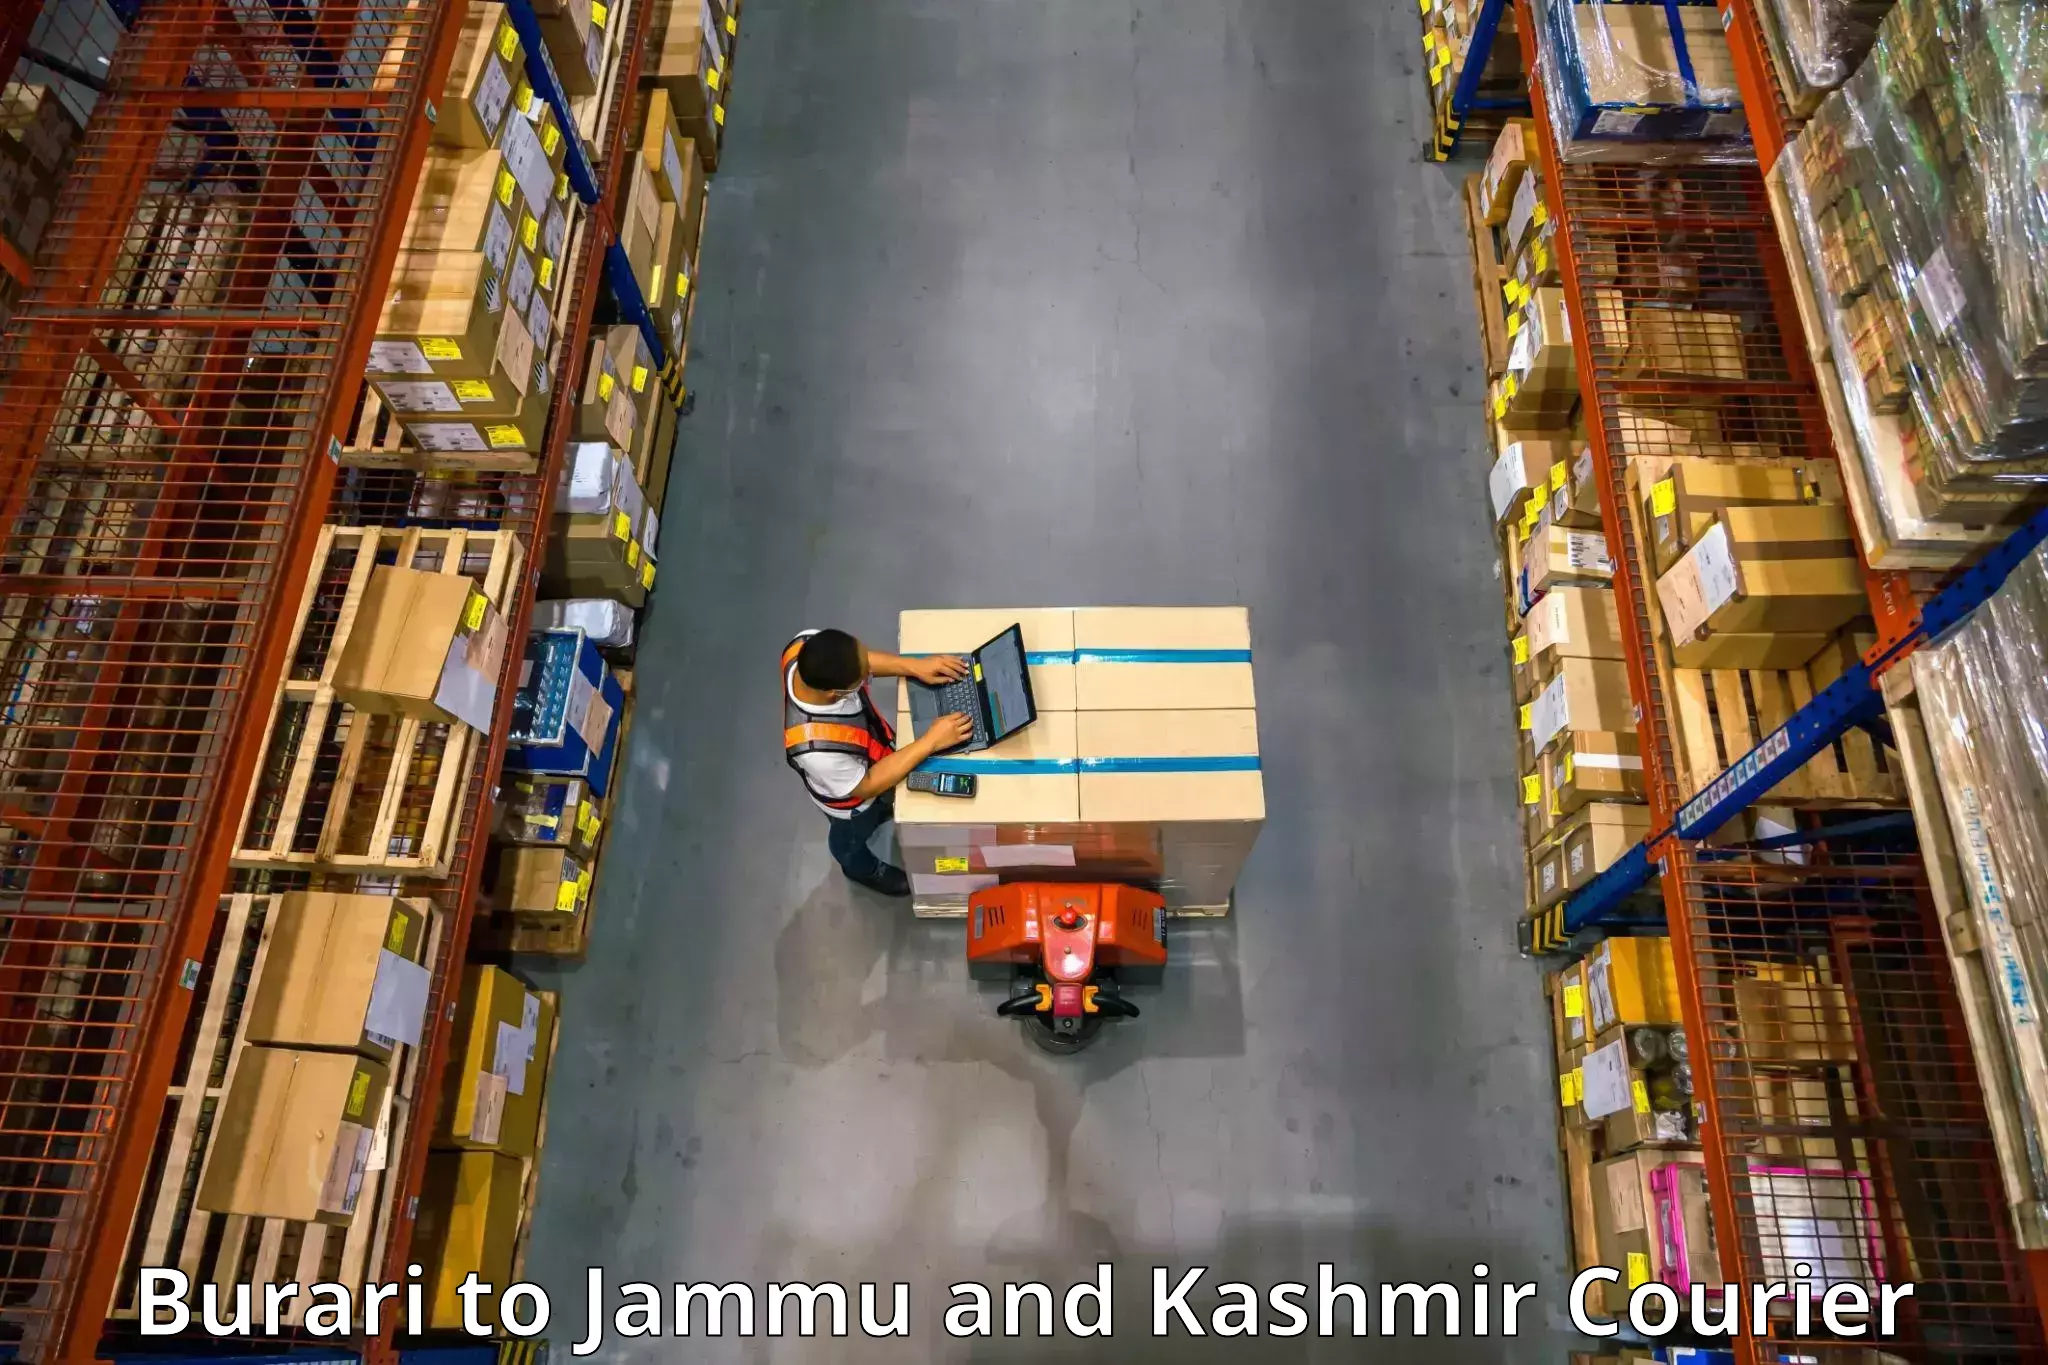 Furniture transport professionals Burari to Jammu and Kashmir